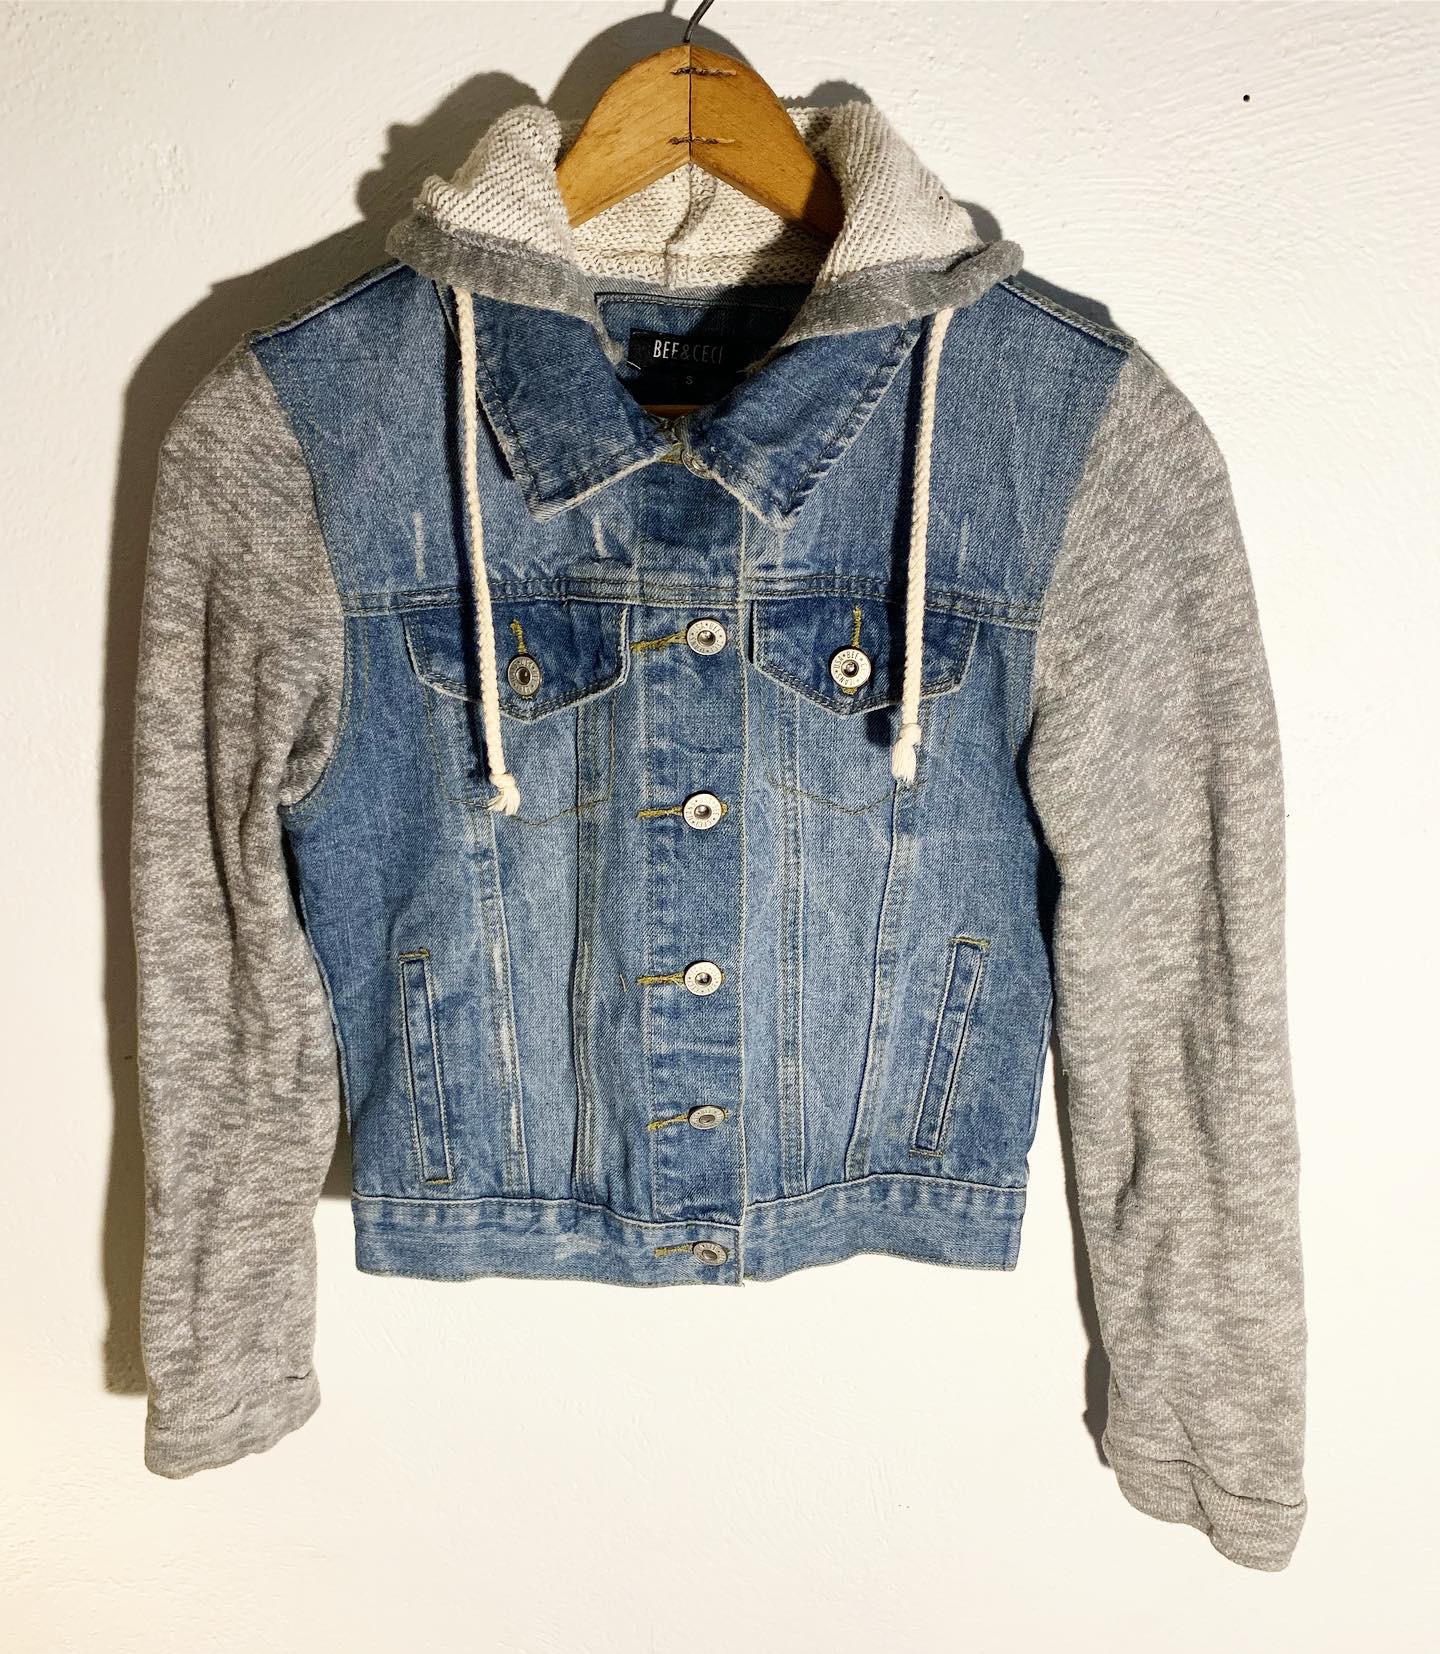 jean sweater jacket